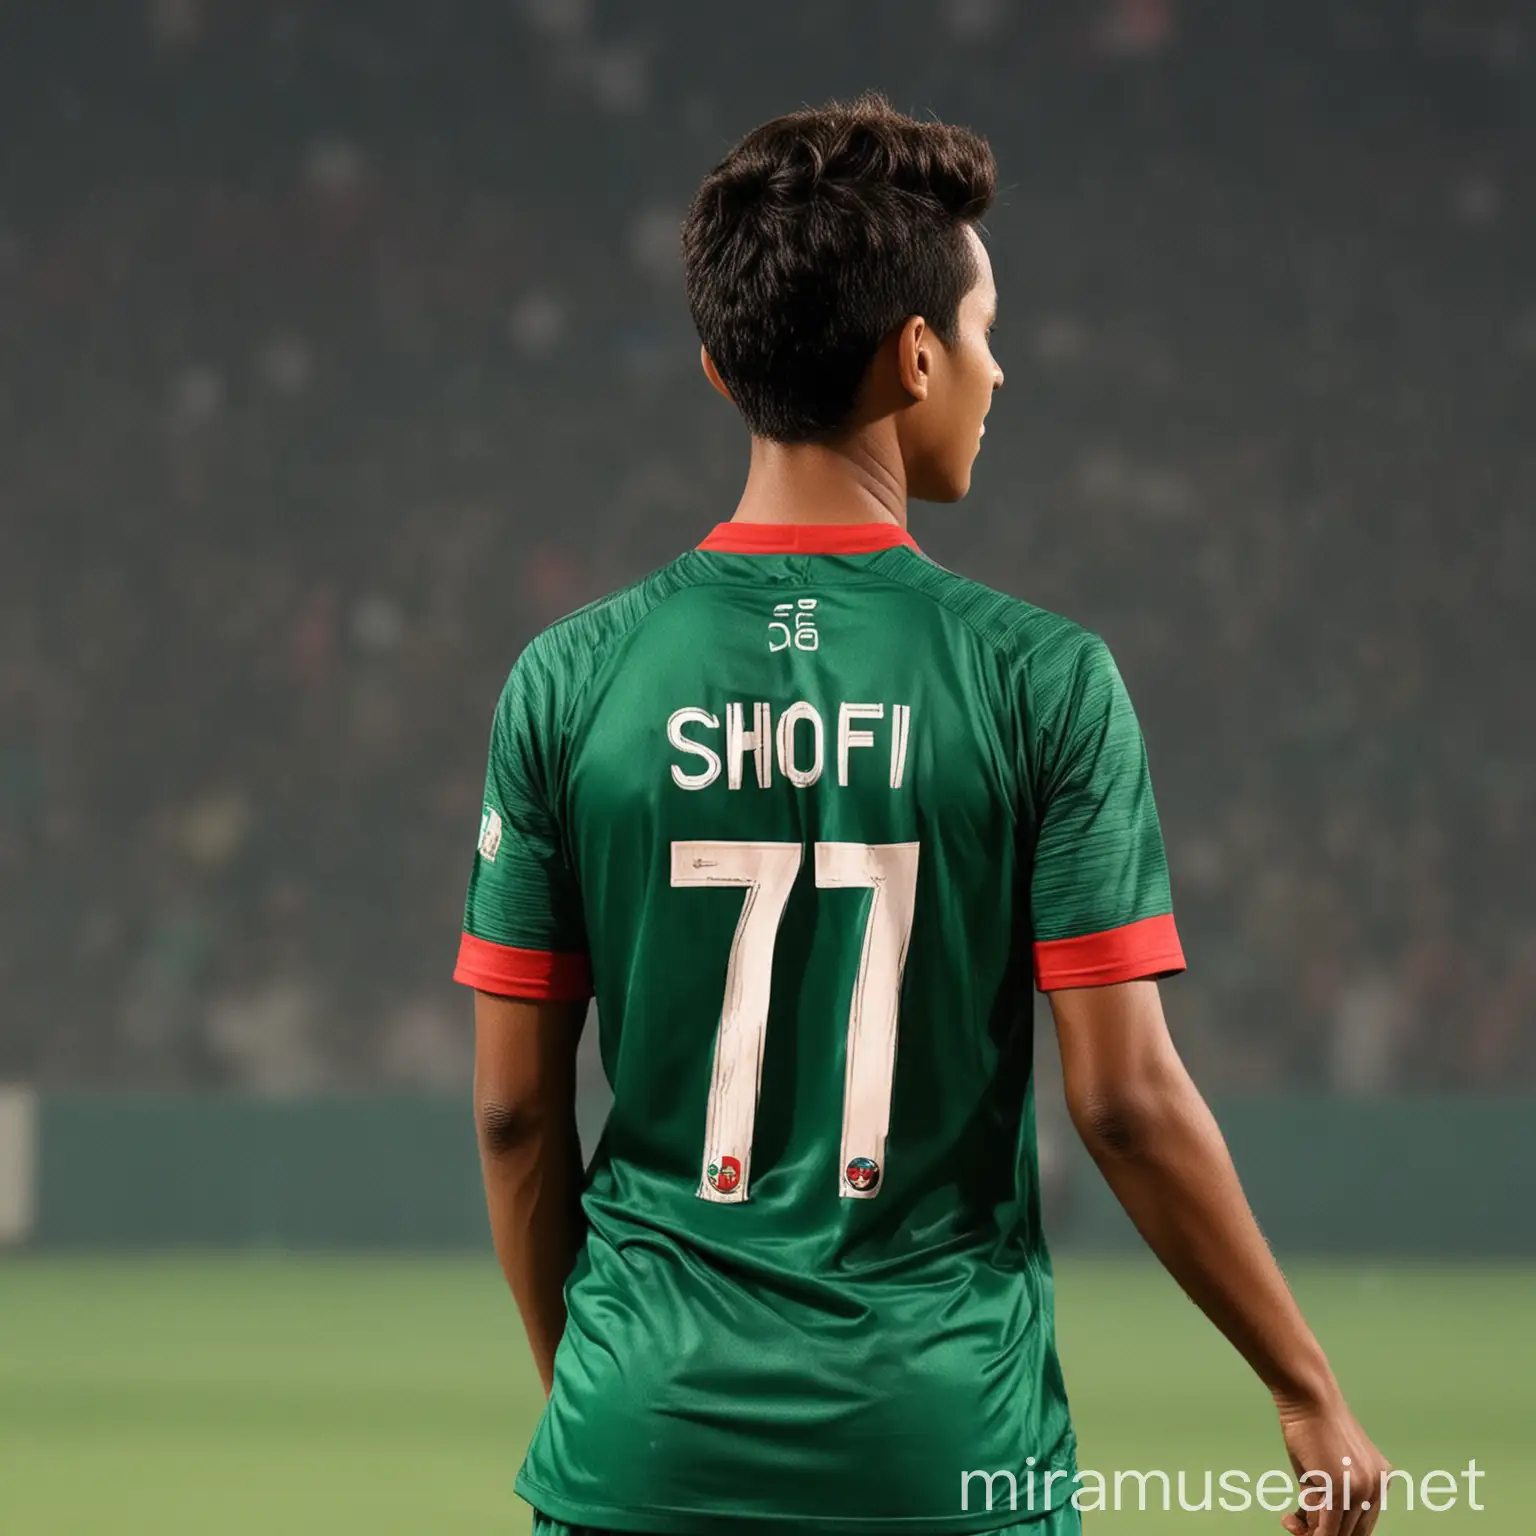 Bangladesh Jersey Number 77 Shofi Displaying Name on Back